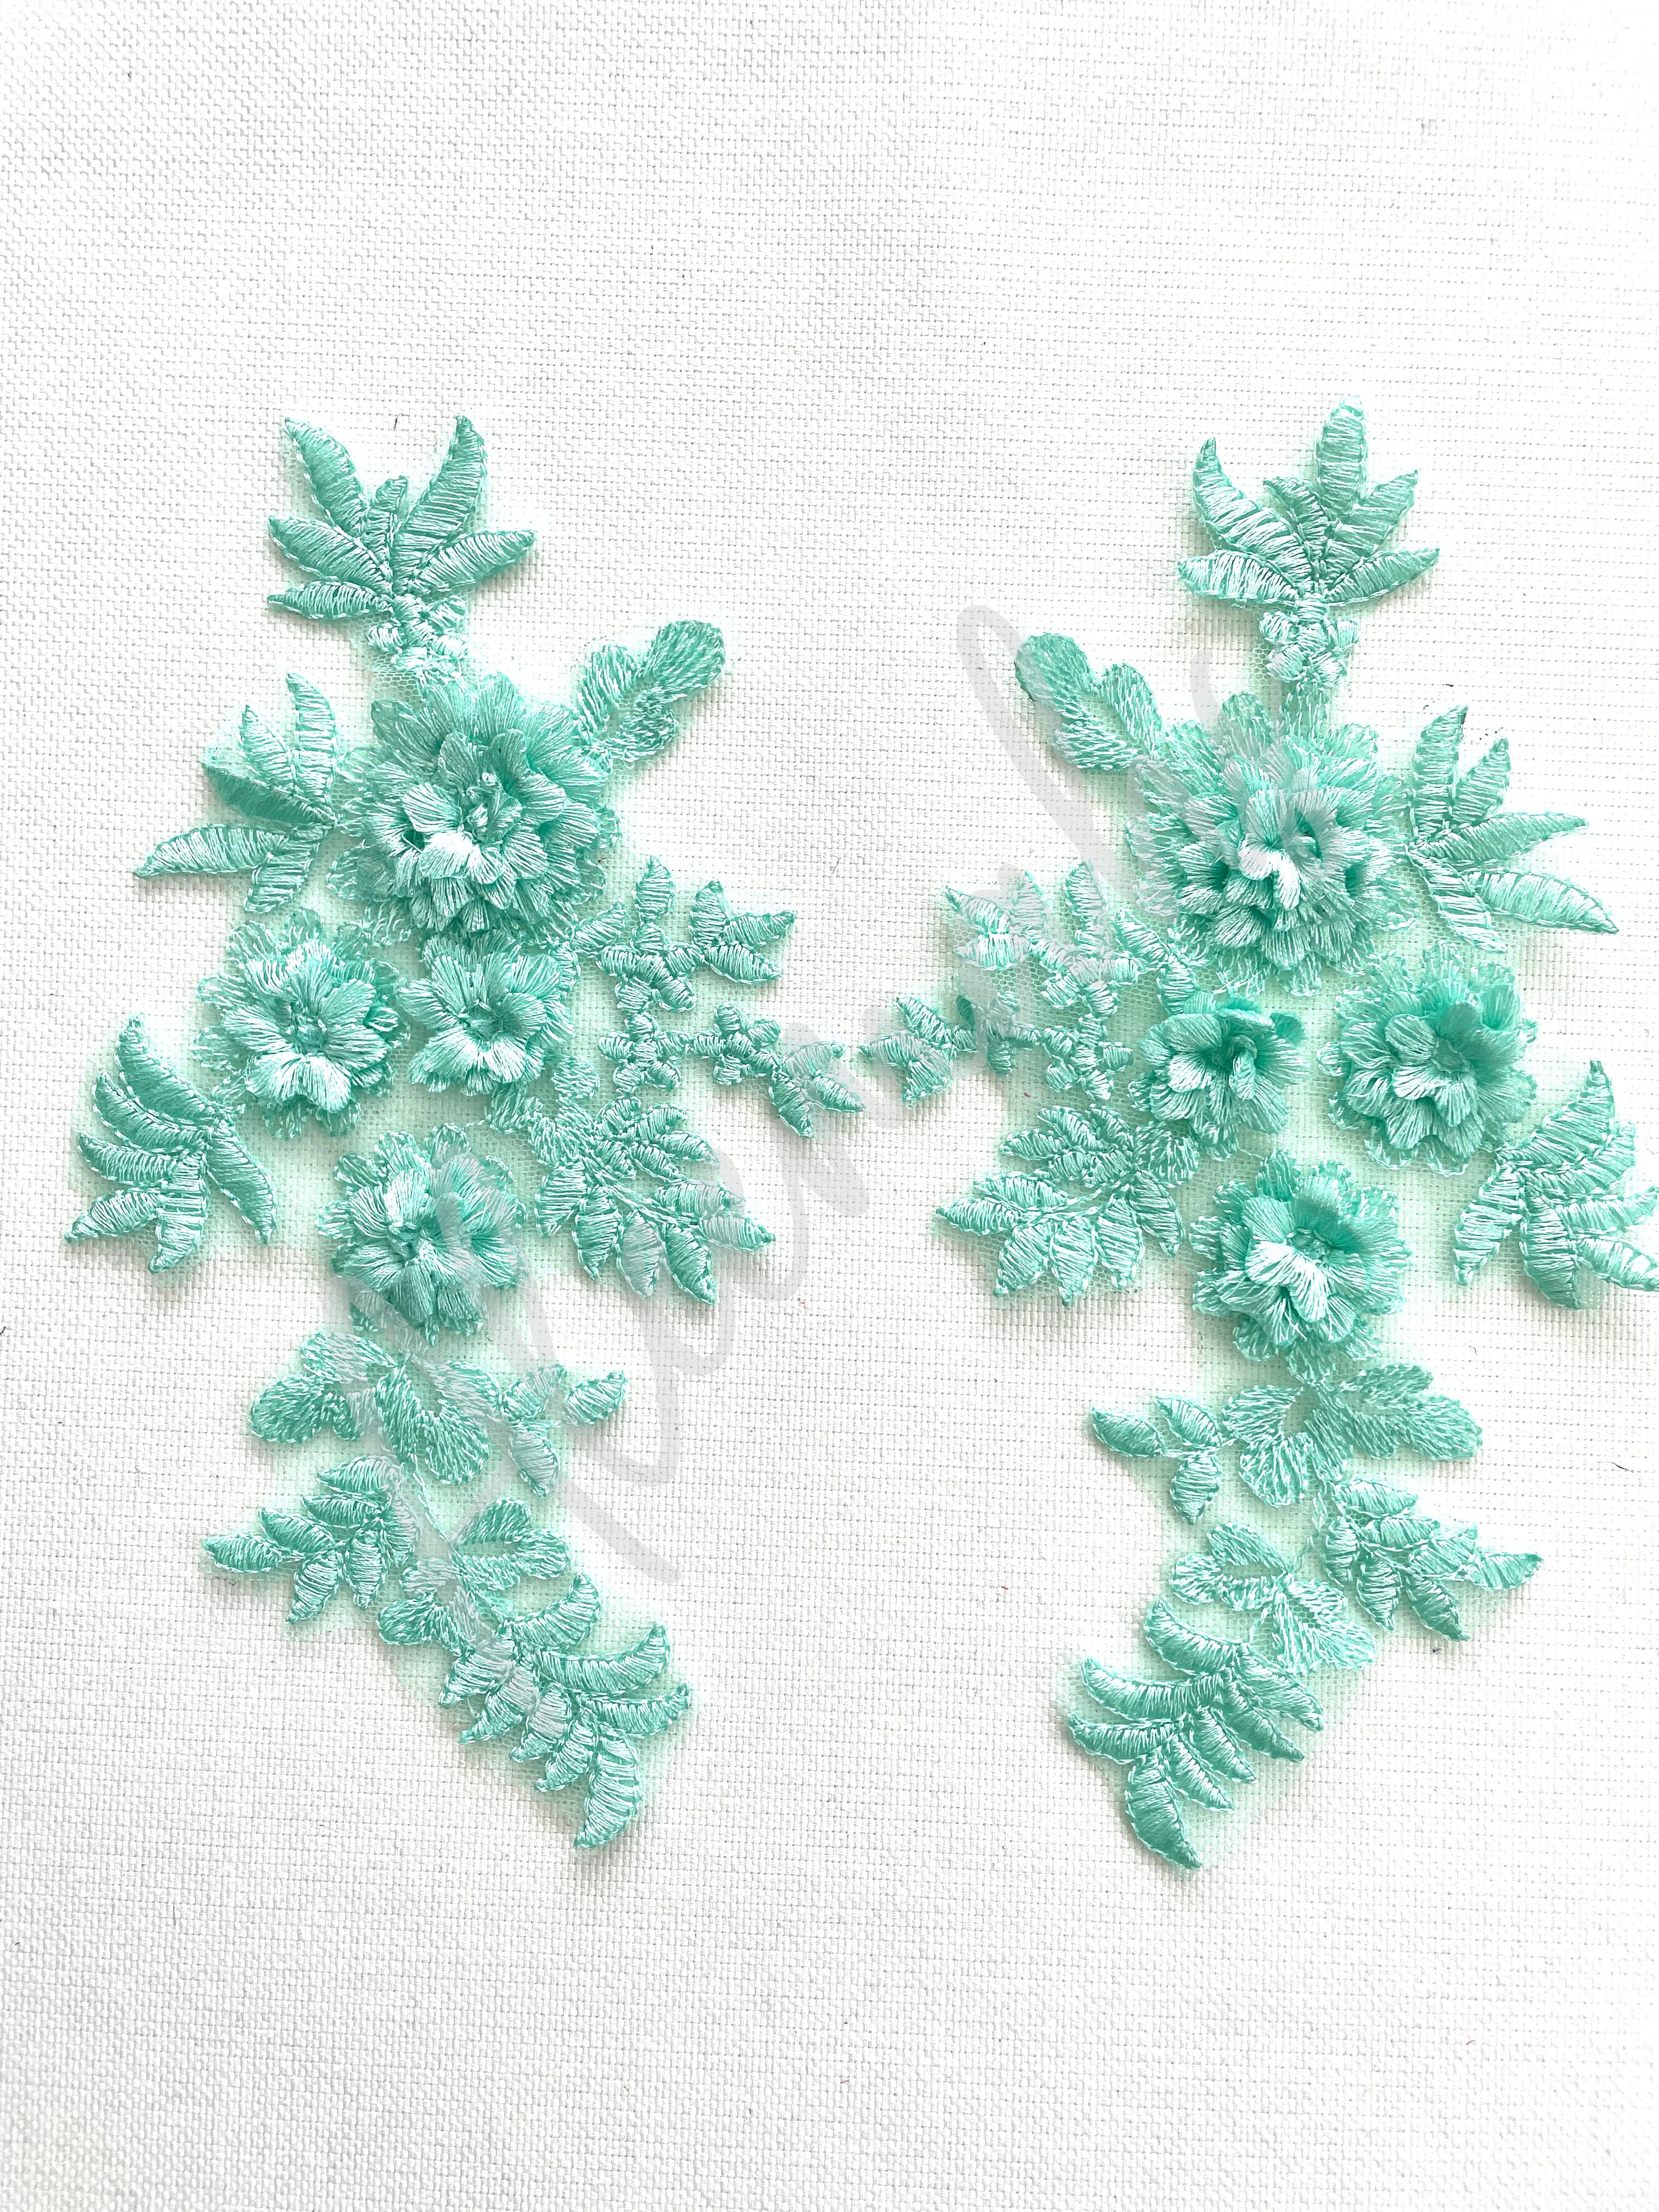 LA-033: 3D floral lace applique pair: Light Spearmint